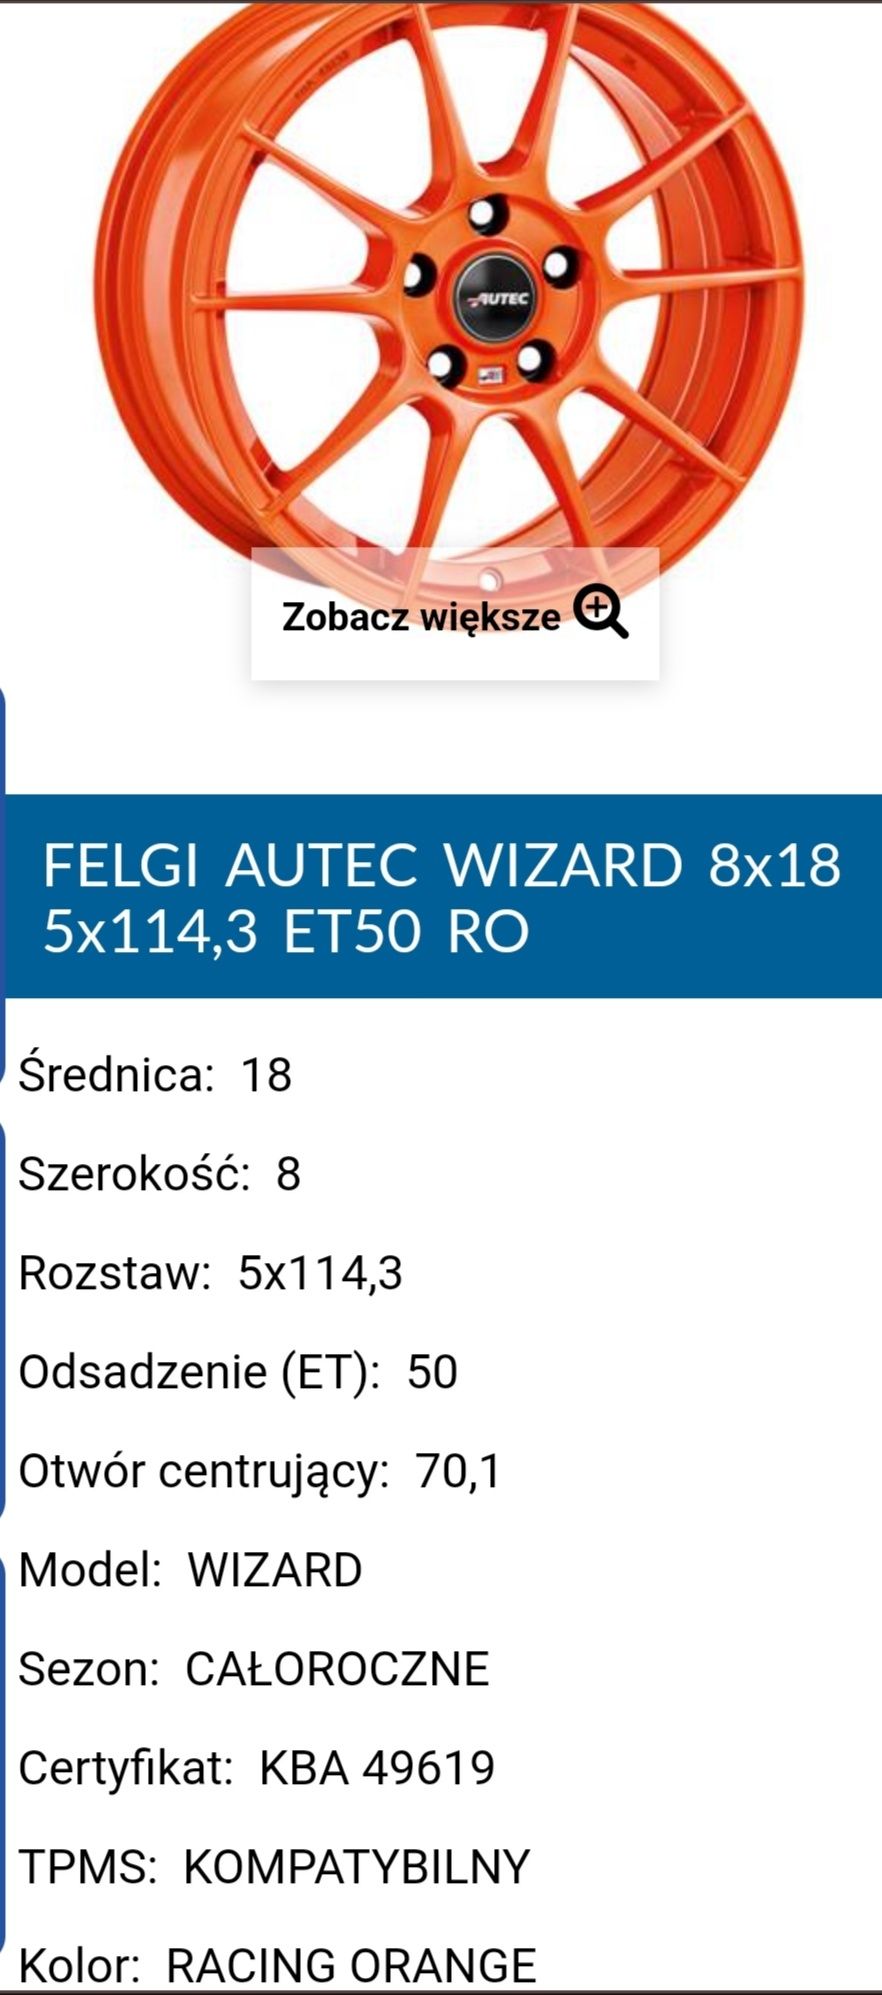 Felgi wizard + opony zimowe Bridgestone